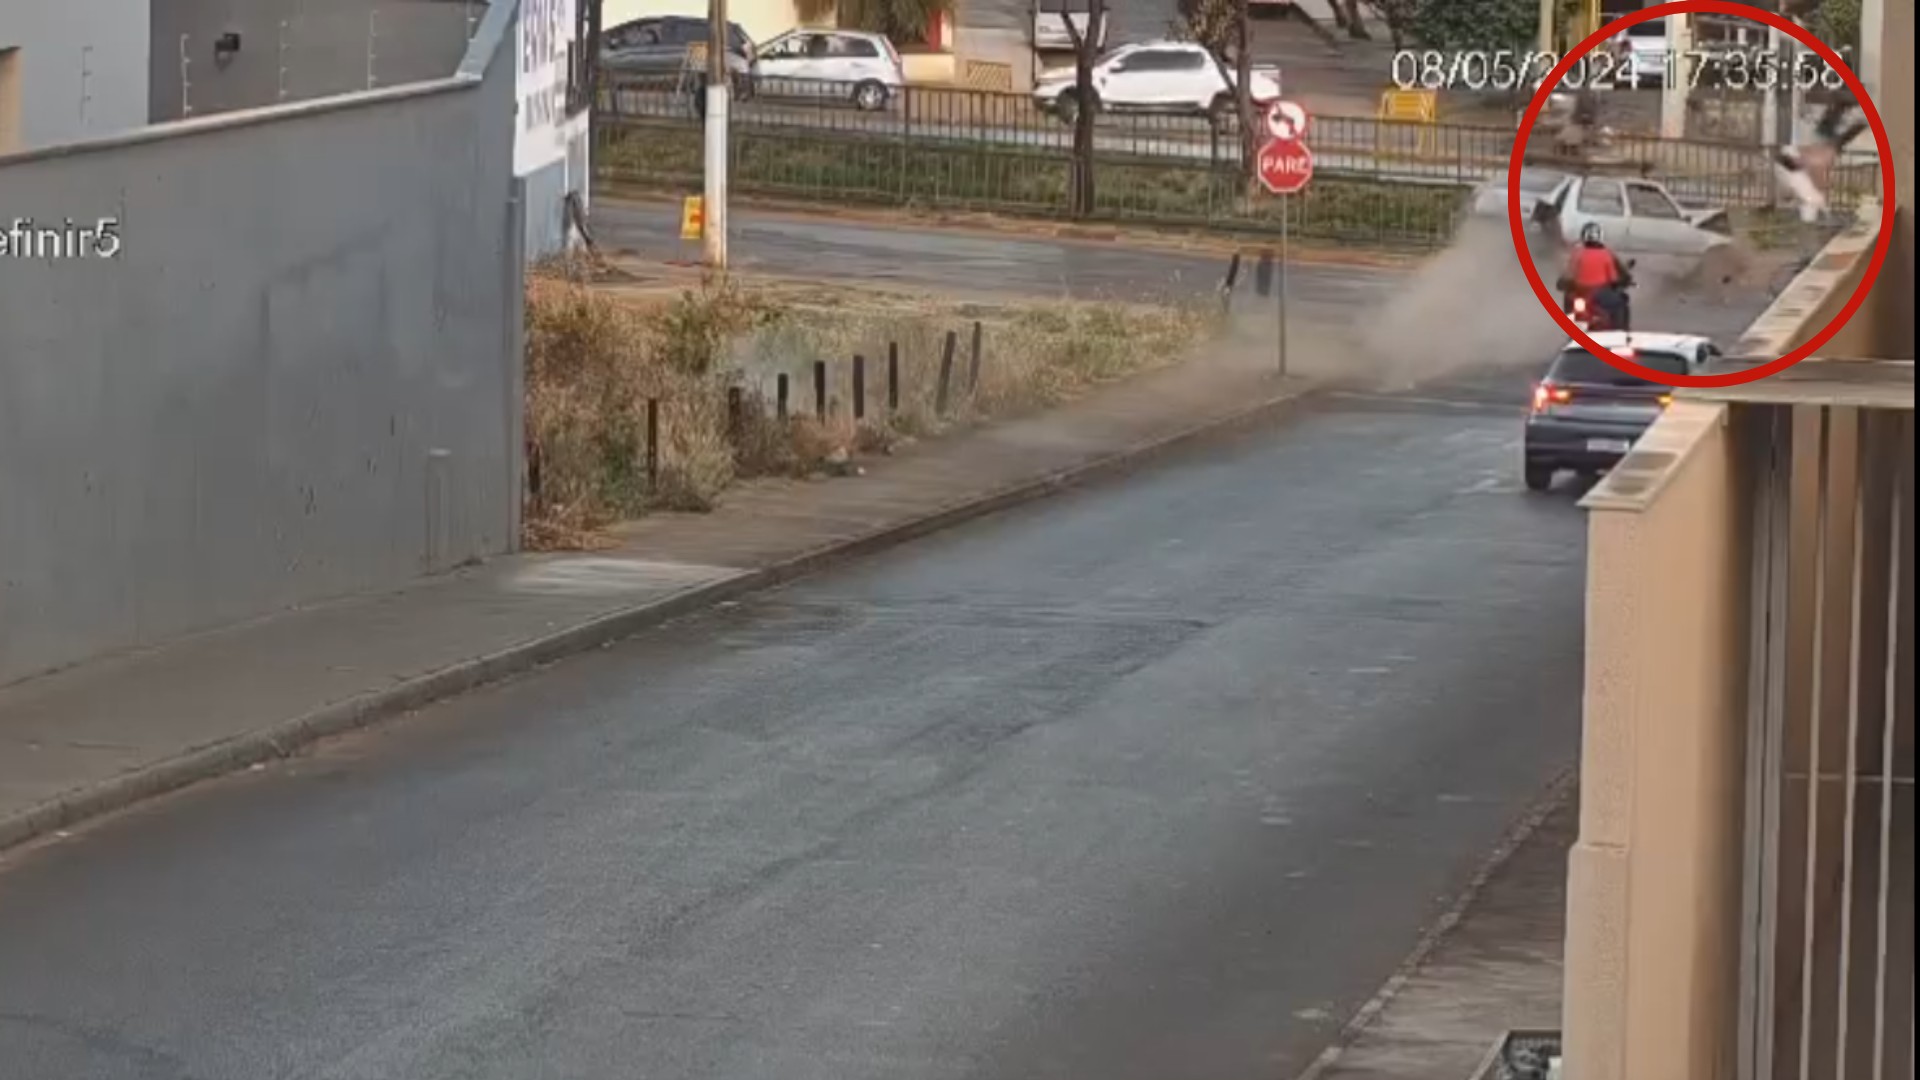 VÍDEO: Motorista embriagado em carro desgovernado avança sinal e bate em duas motos; garupa é lançado a 15 metros